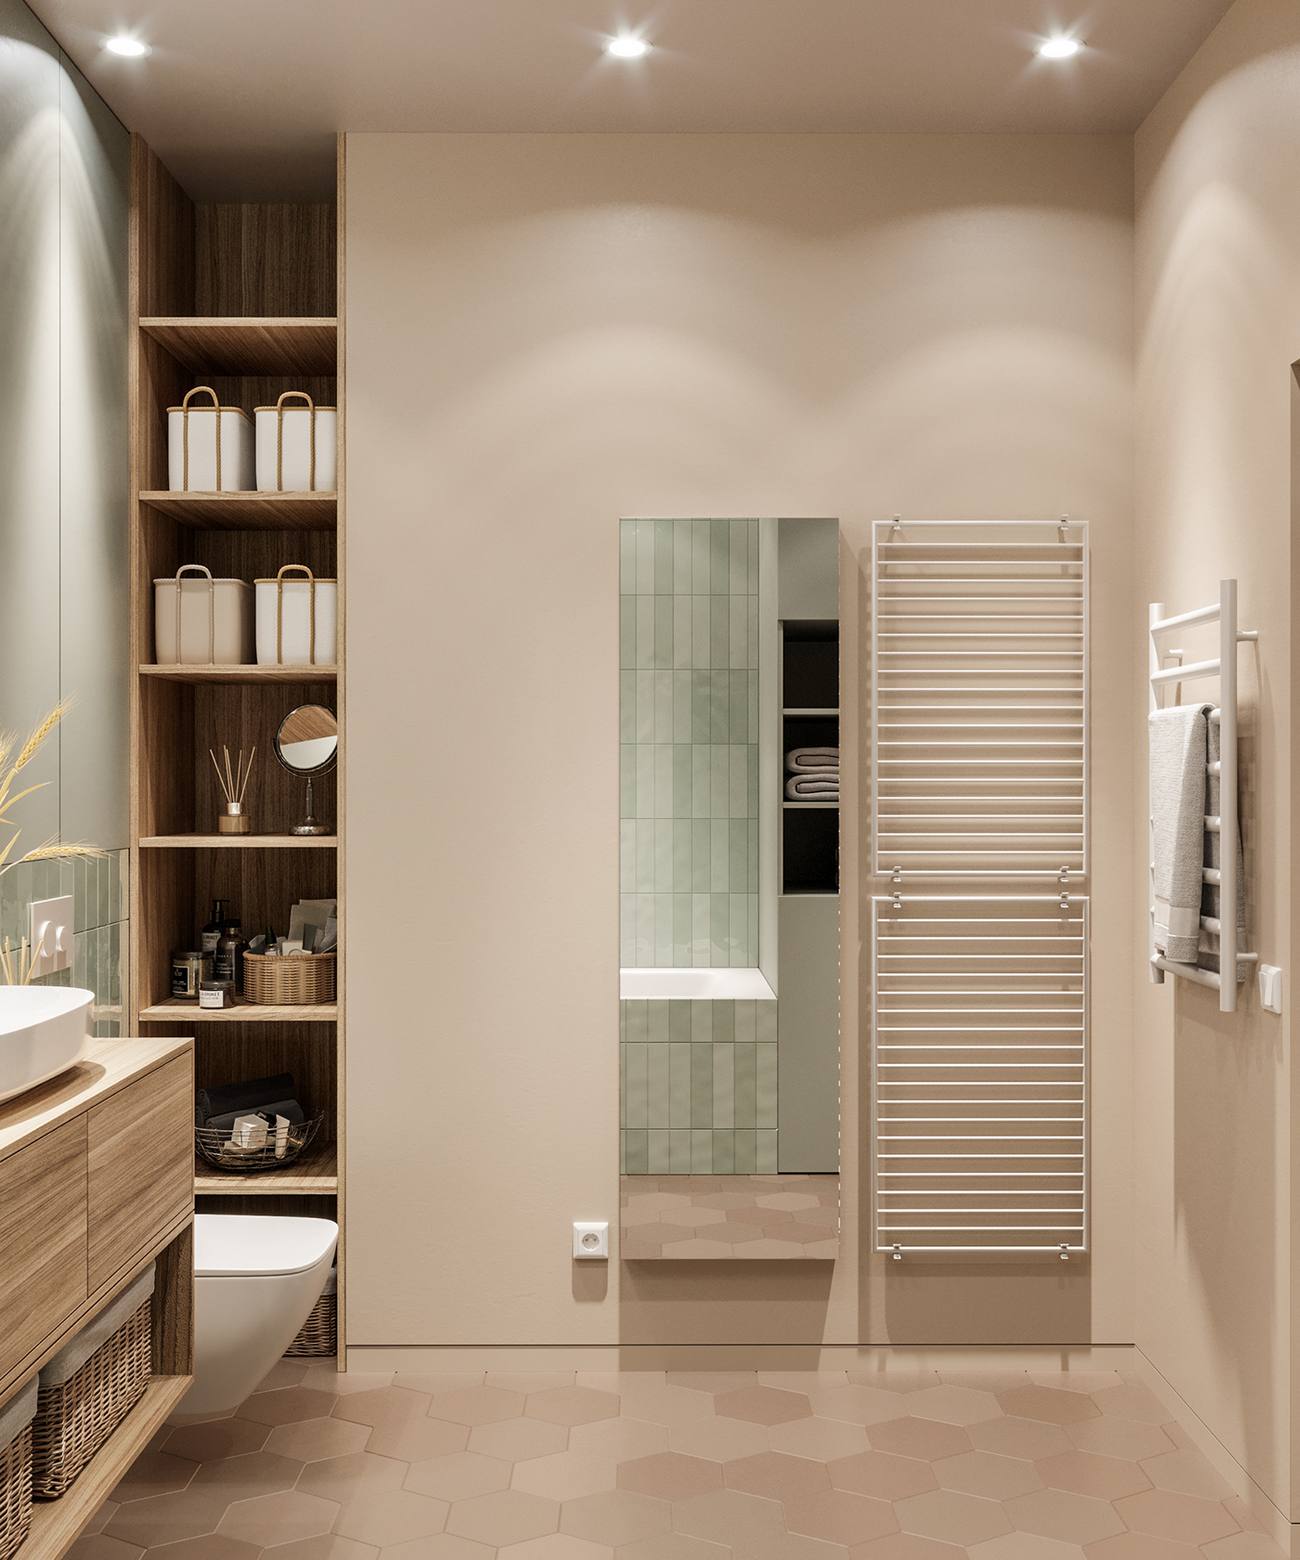 Phòng tắm lớn của bố mẹ với gạch lát sàn hình lục giác (tổ ong), hệ thống tủ lưu trữ rộng rãi, nội thất gỗ kết hợp với màu tường ốp gạch xanh bạc hà dịu mát.